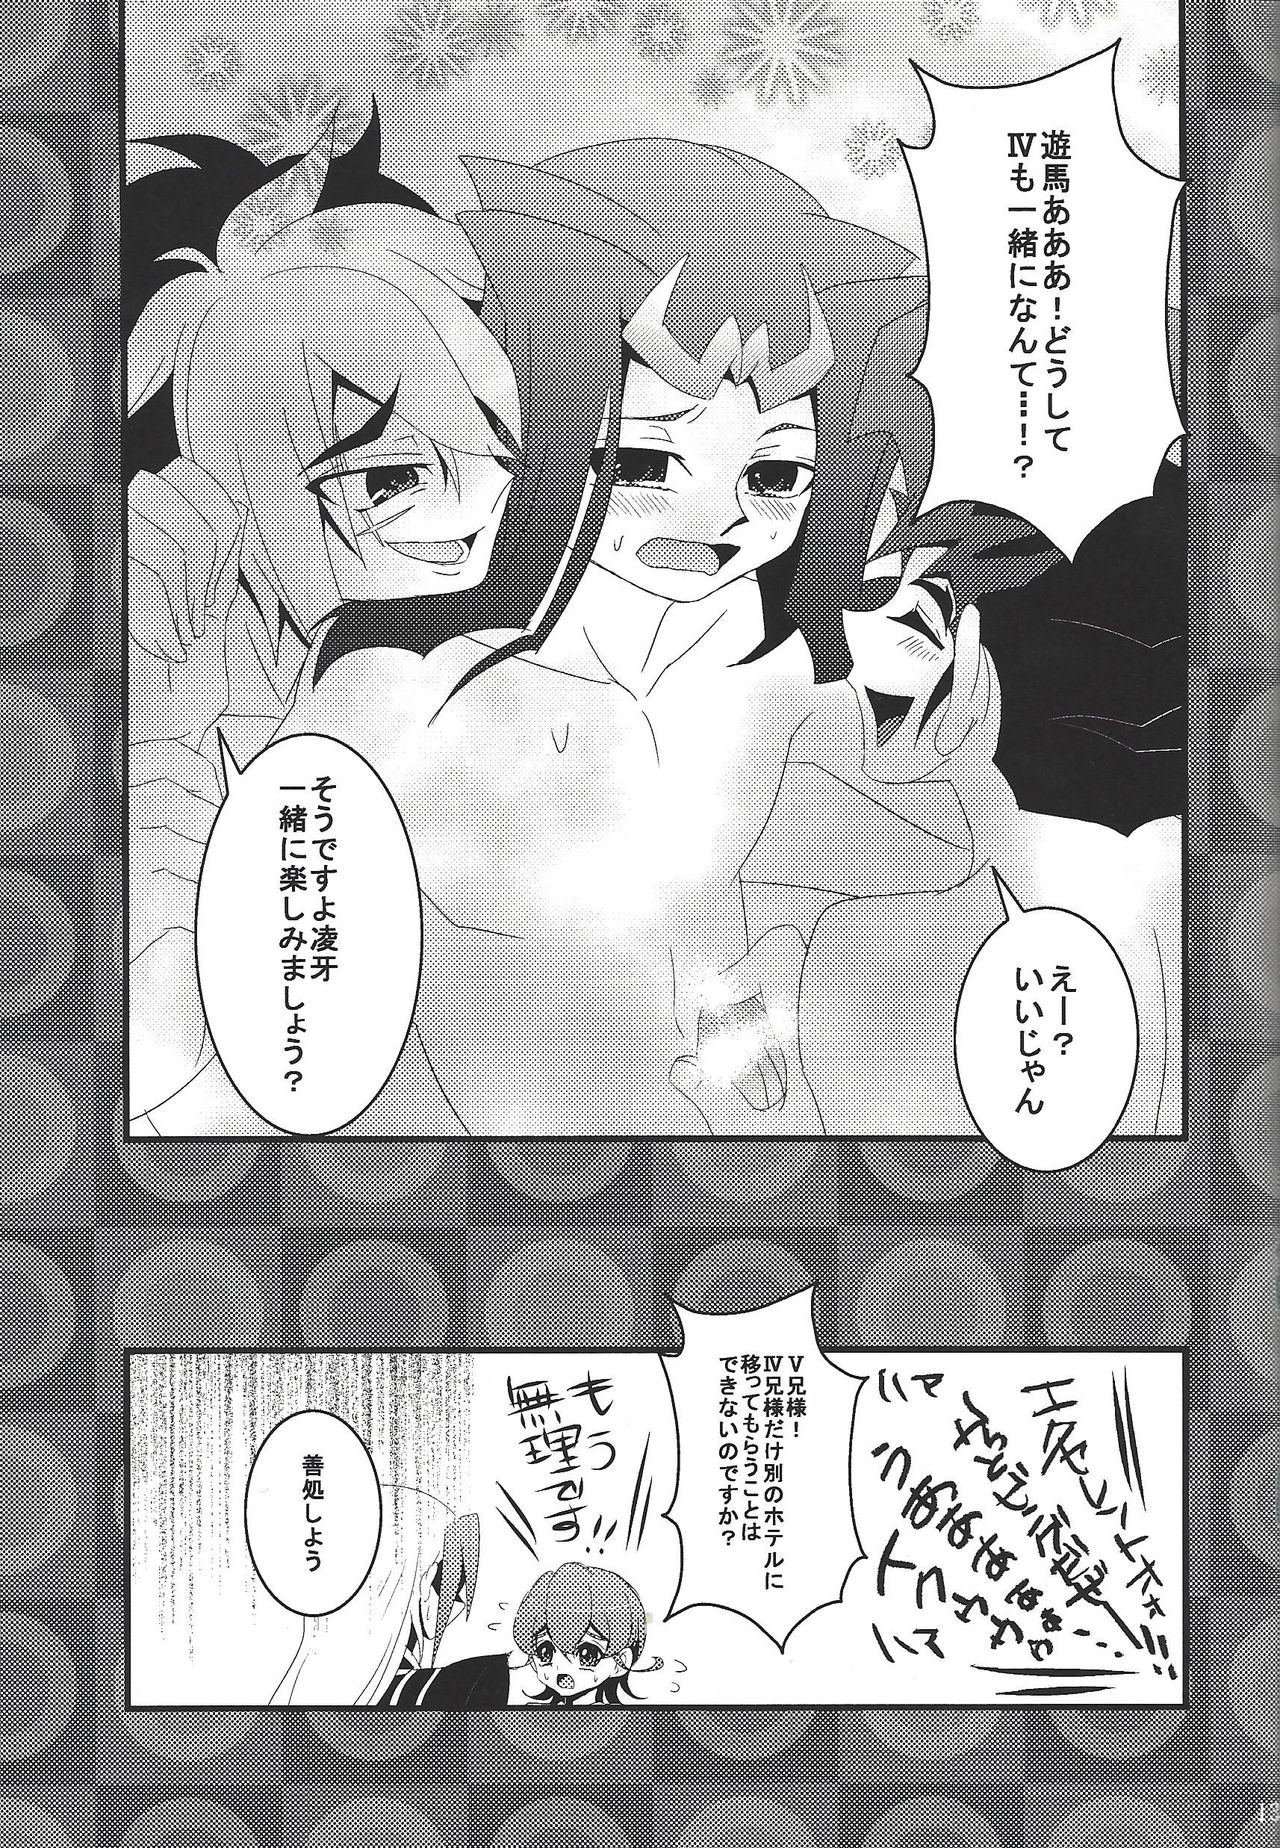 [Amanatsu ku~orite (Amu)] Riajū shi teru ryōga o ne totte ganmen kijō shite moraitai IV no hon (Yu-Gi-Oh! Zexal) page 12 full